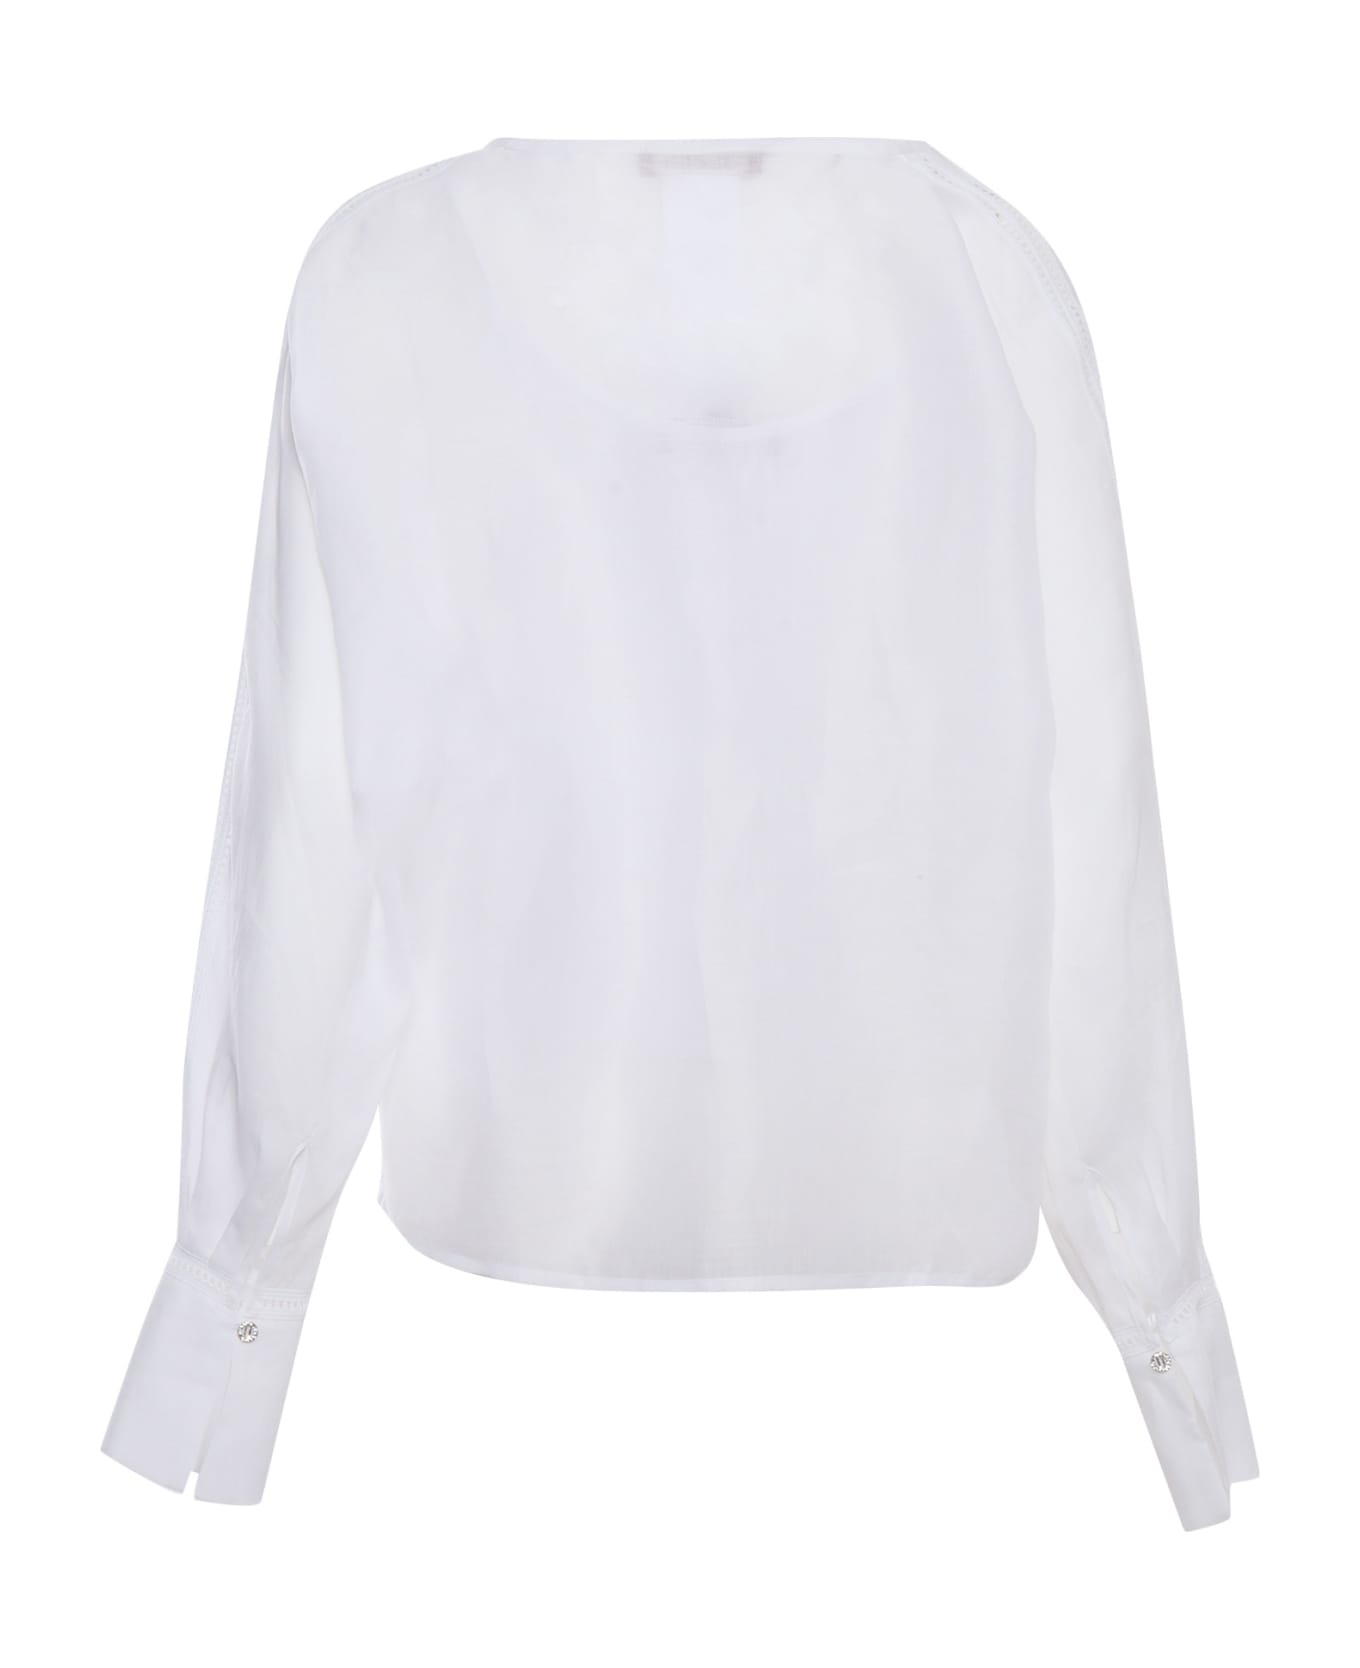 Max Mara Studio White Leccio Shirt - WHITE